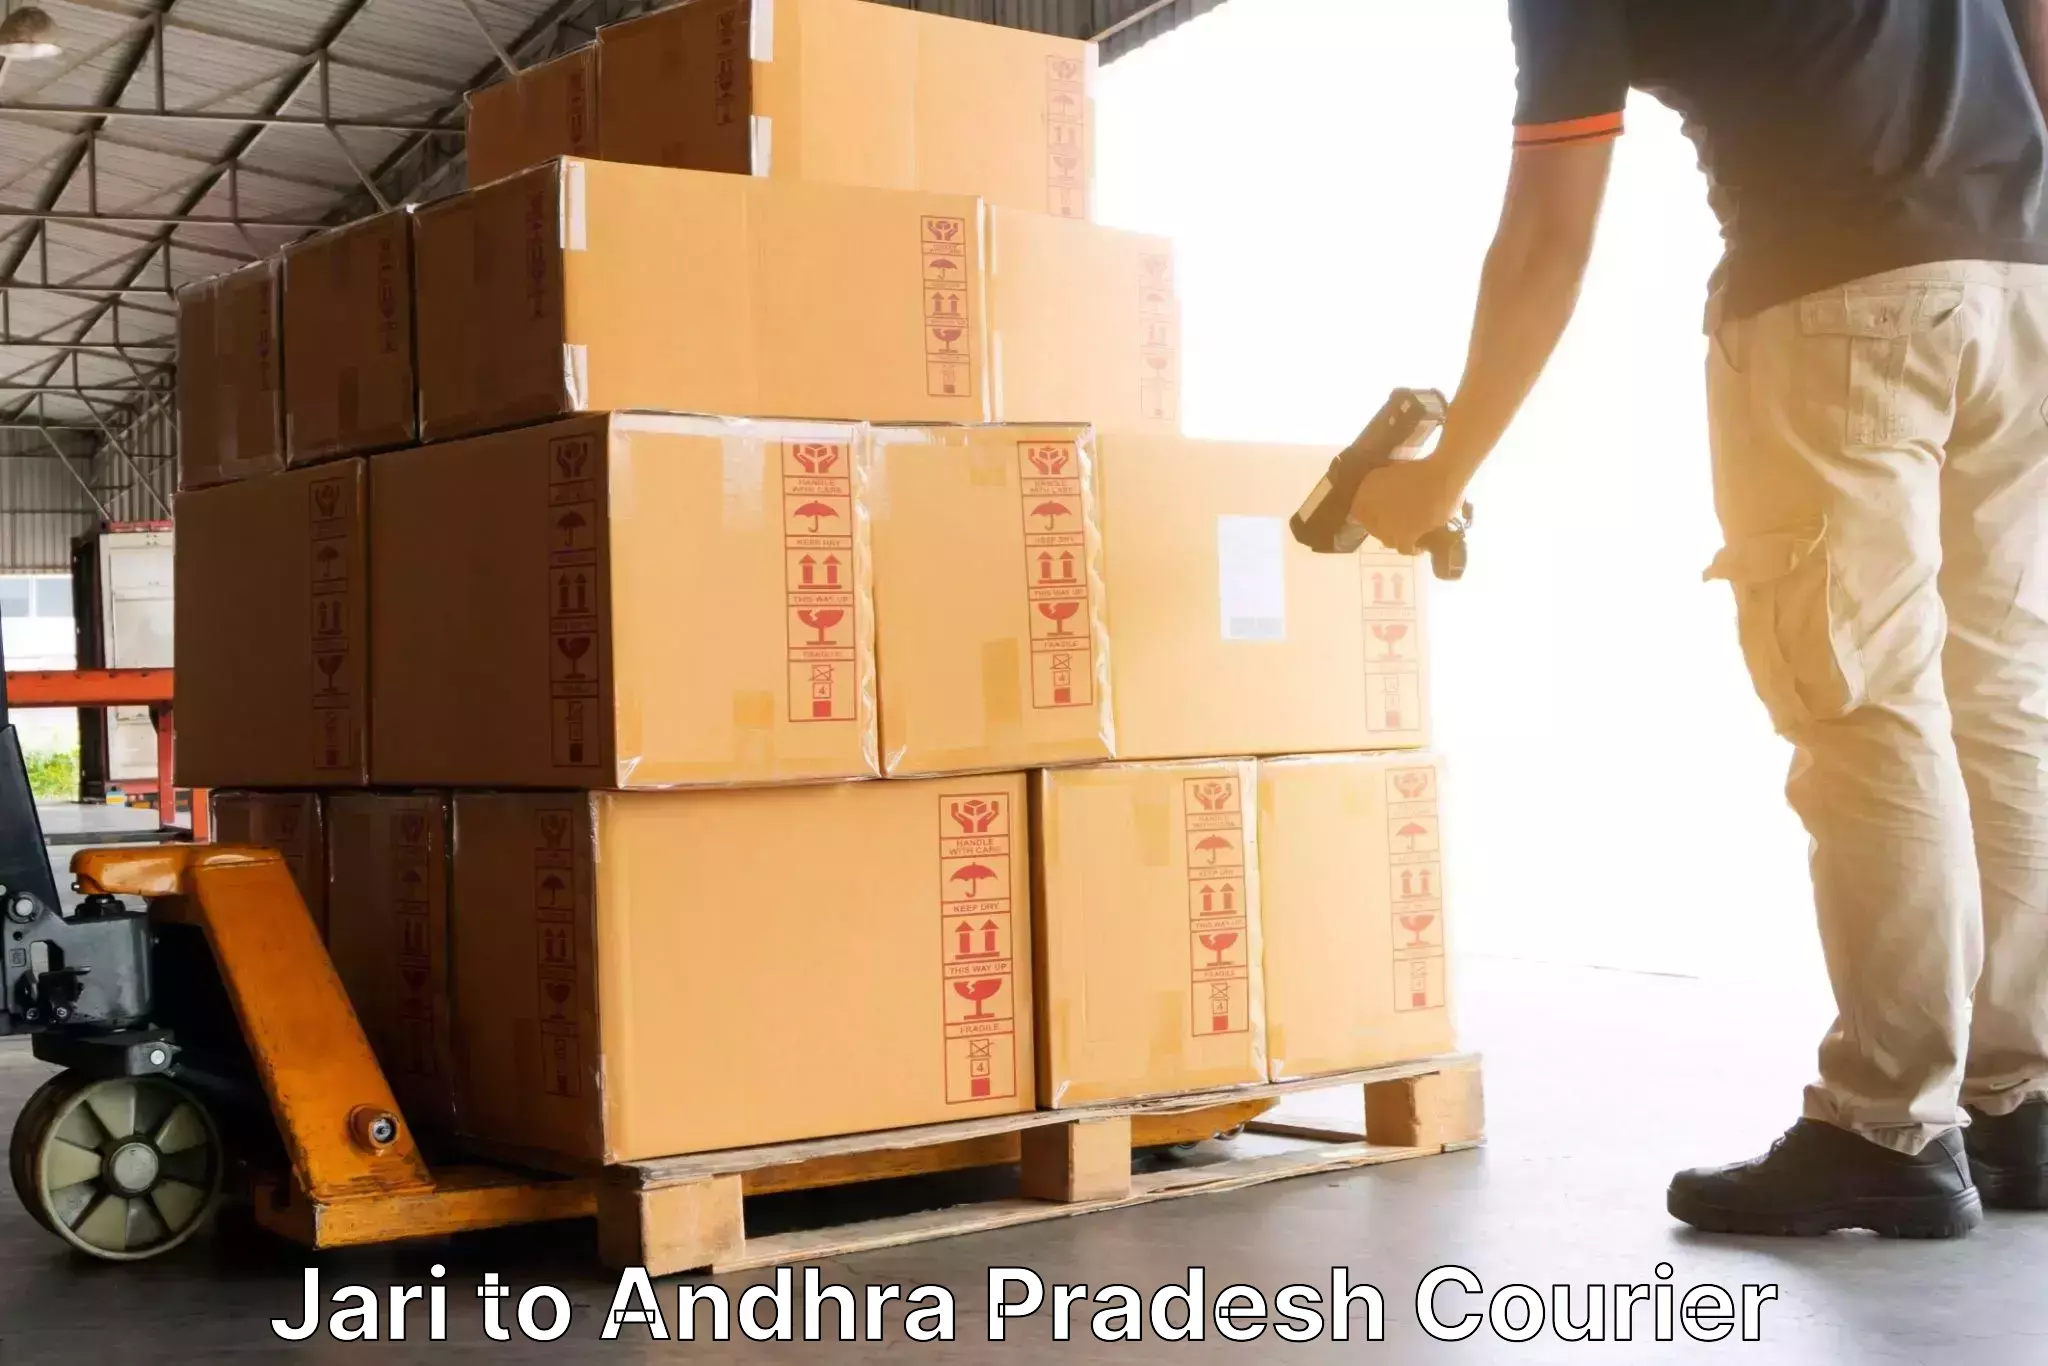 Courier tracking online Jari to Andhra Pradesh